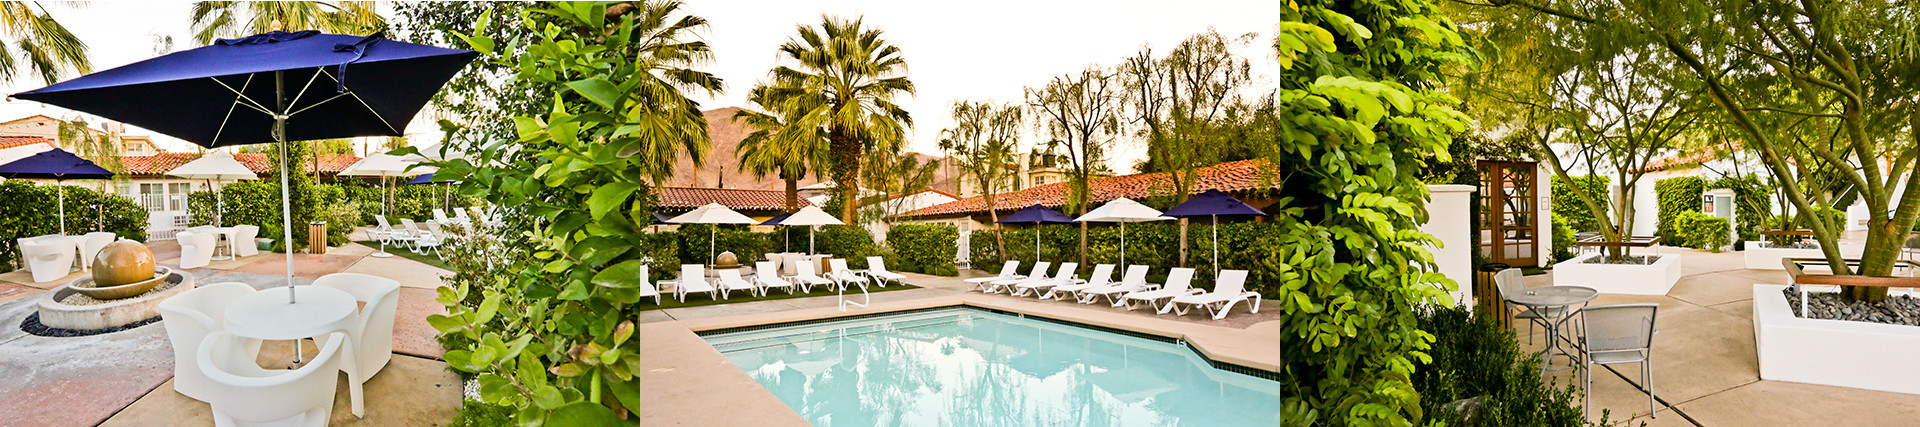 Alcazar Hotel Palm Springs 7